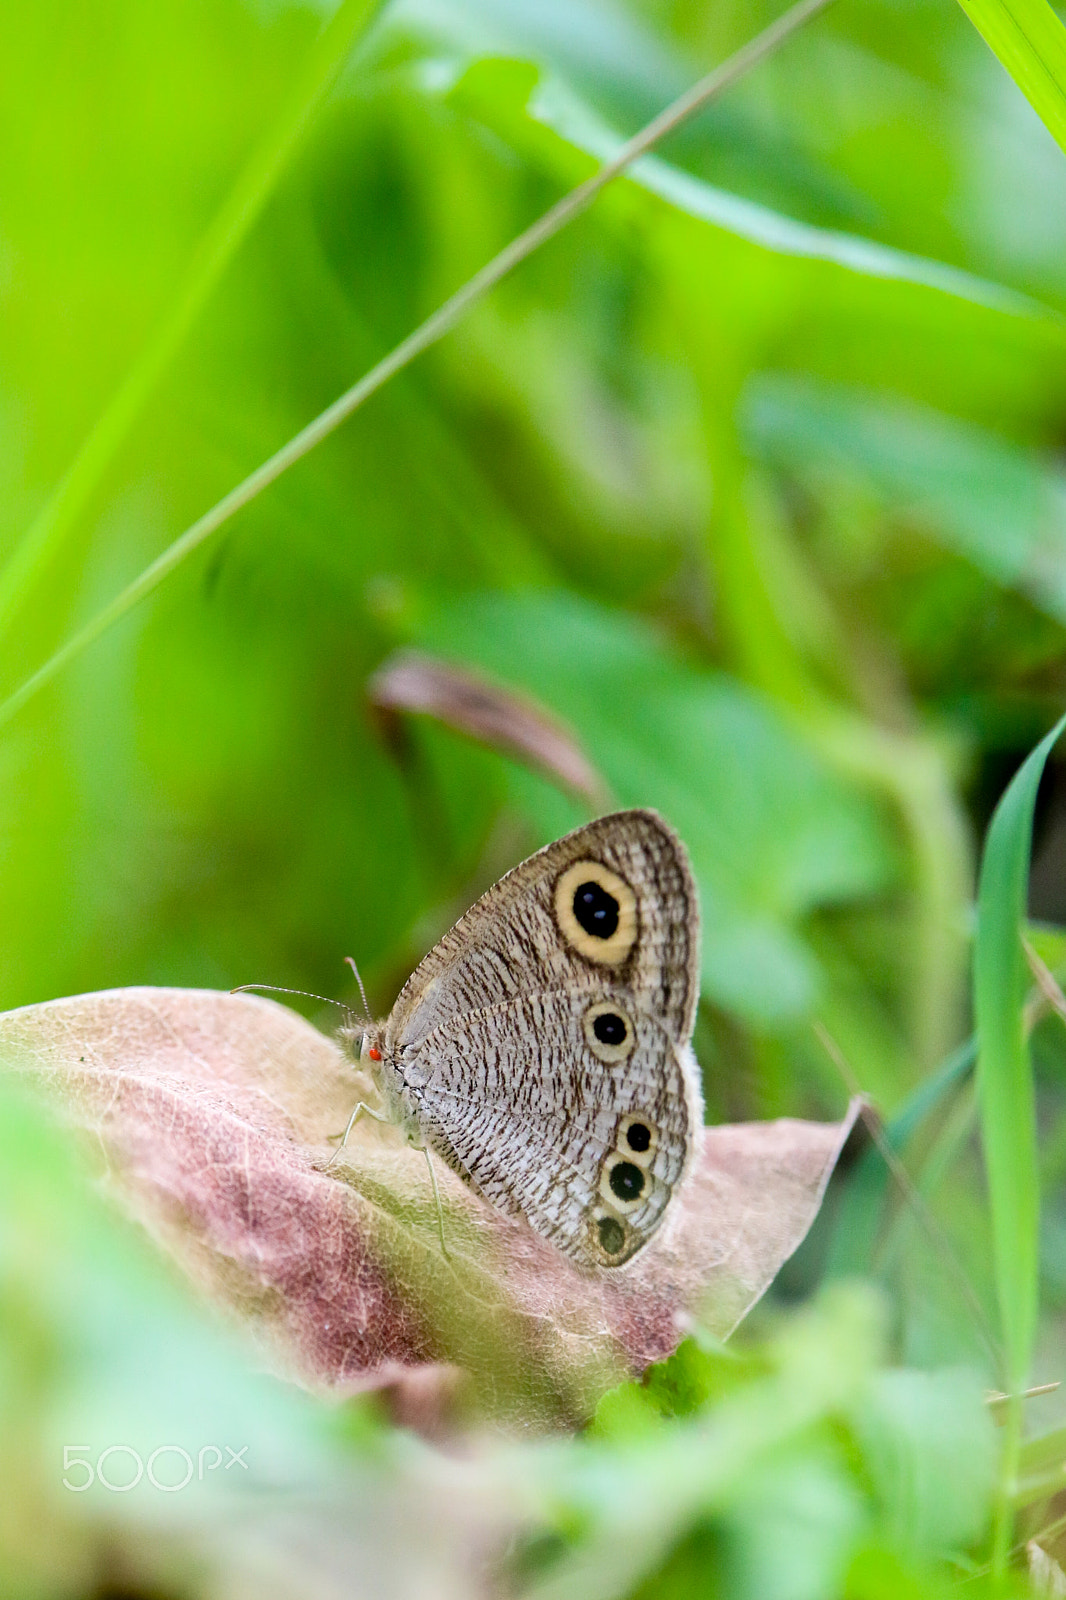 Canon EOS 70D sample photo. Garden lizard & butterfly photography